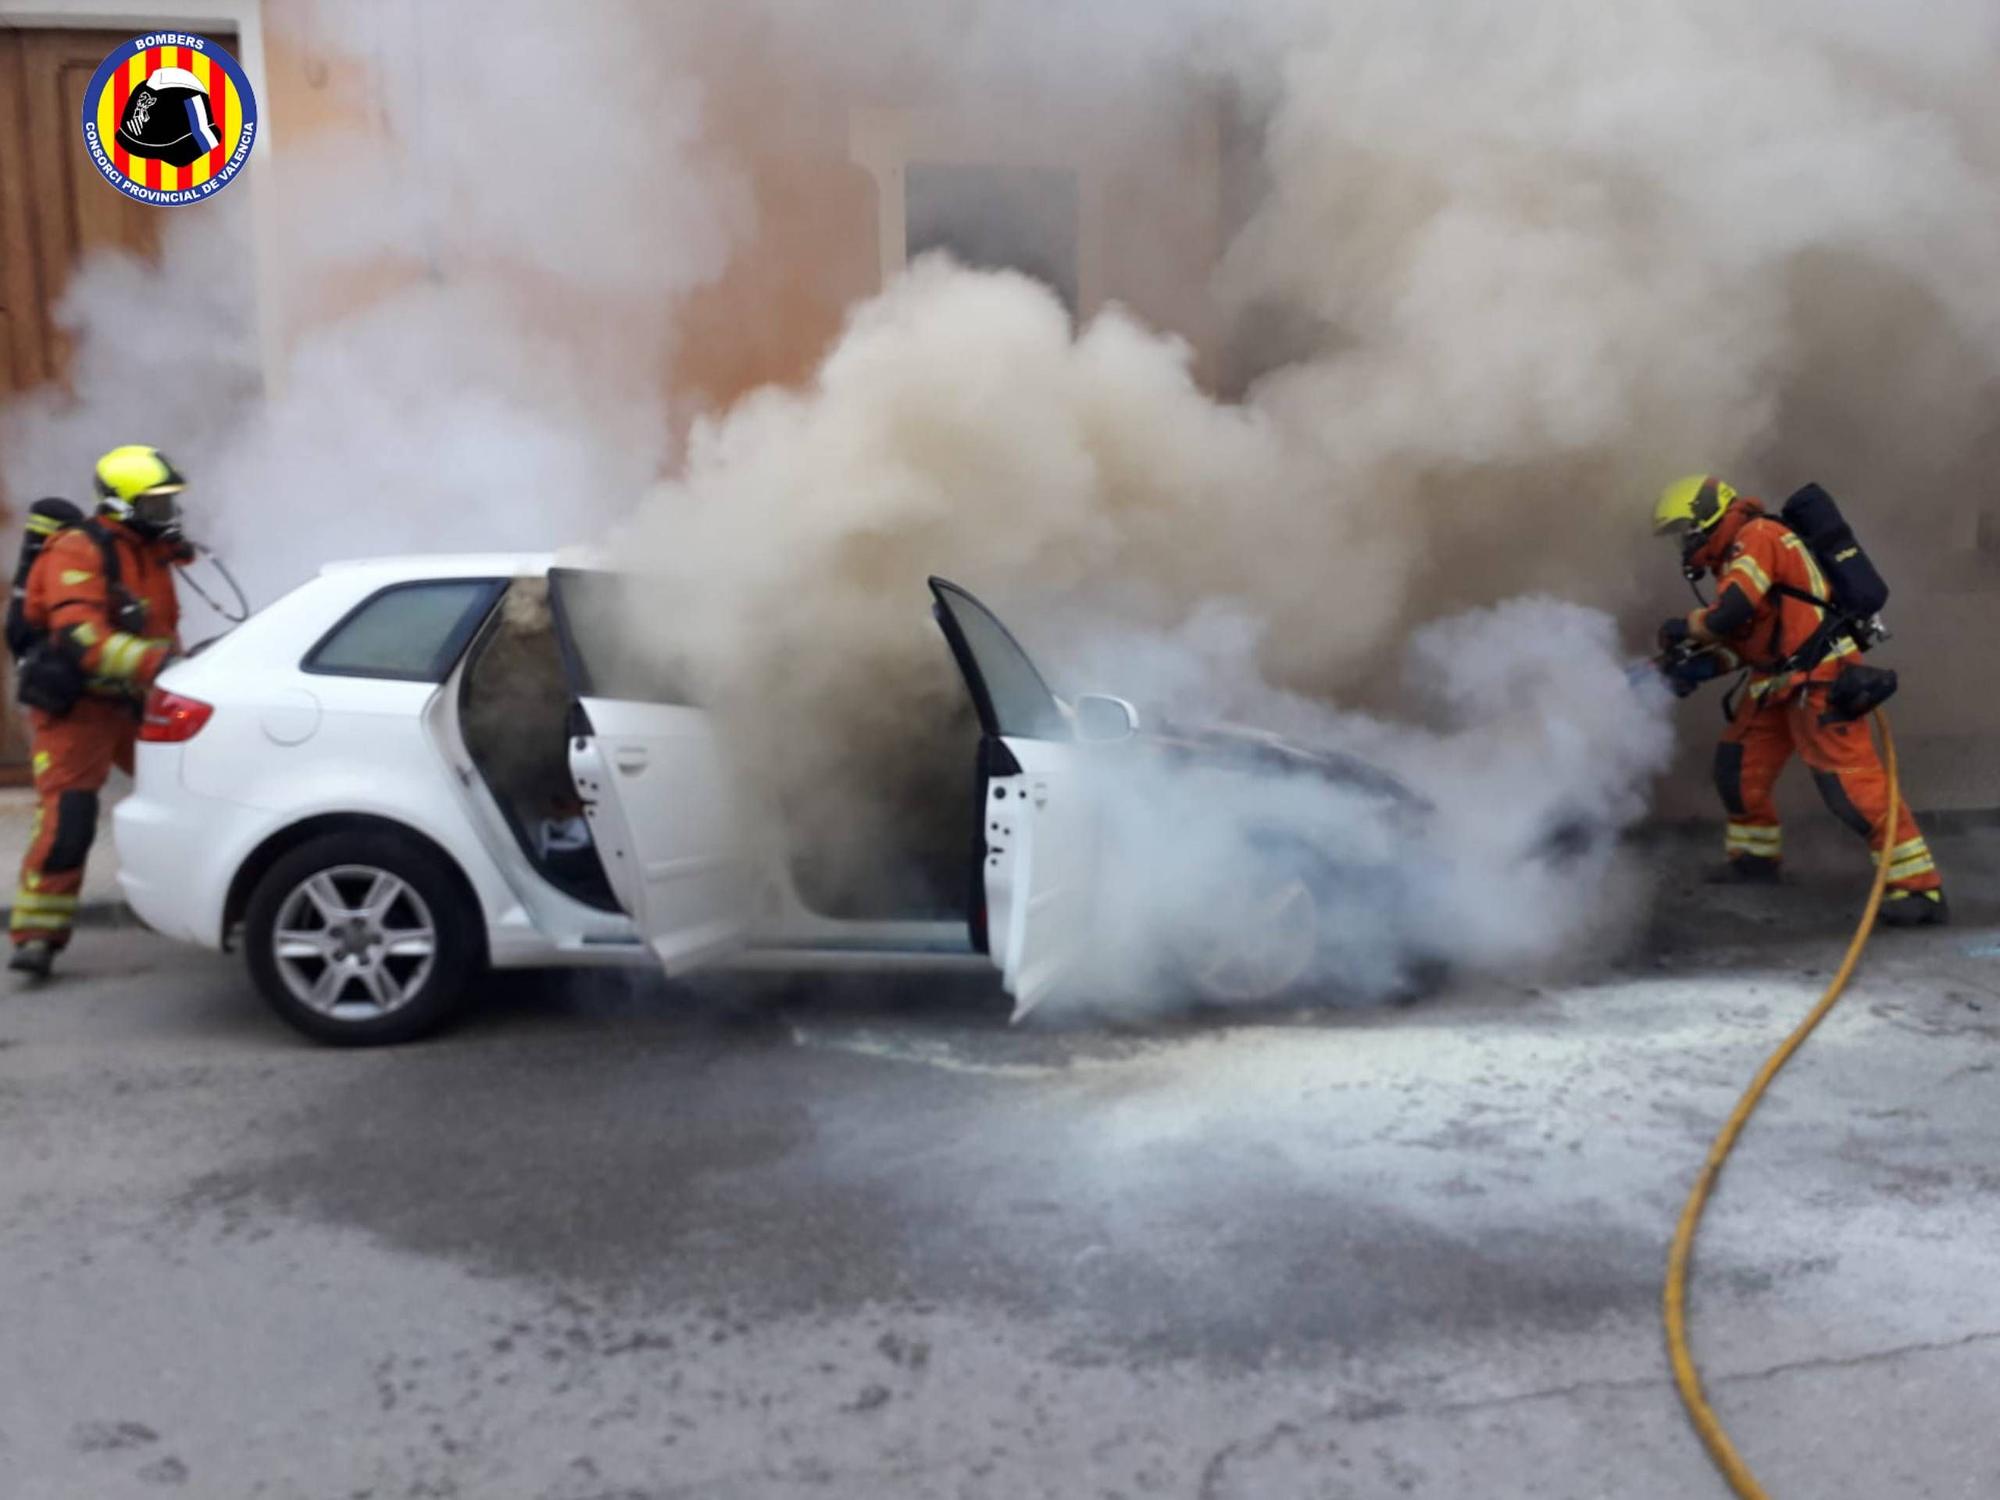 Los bomberos apagan un vehículo incendiado en plena calle en Carlet